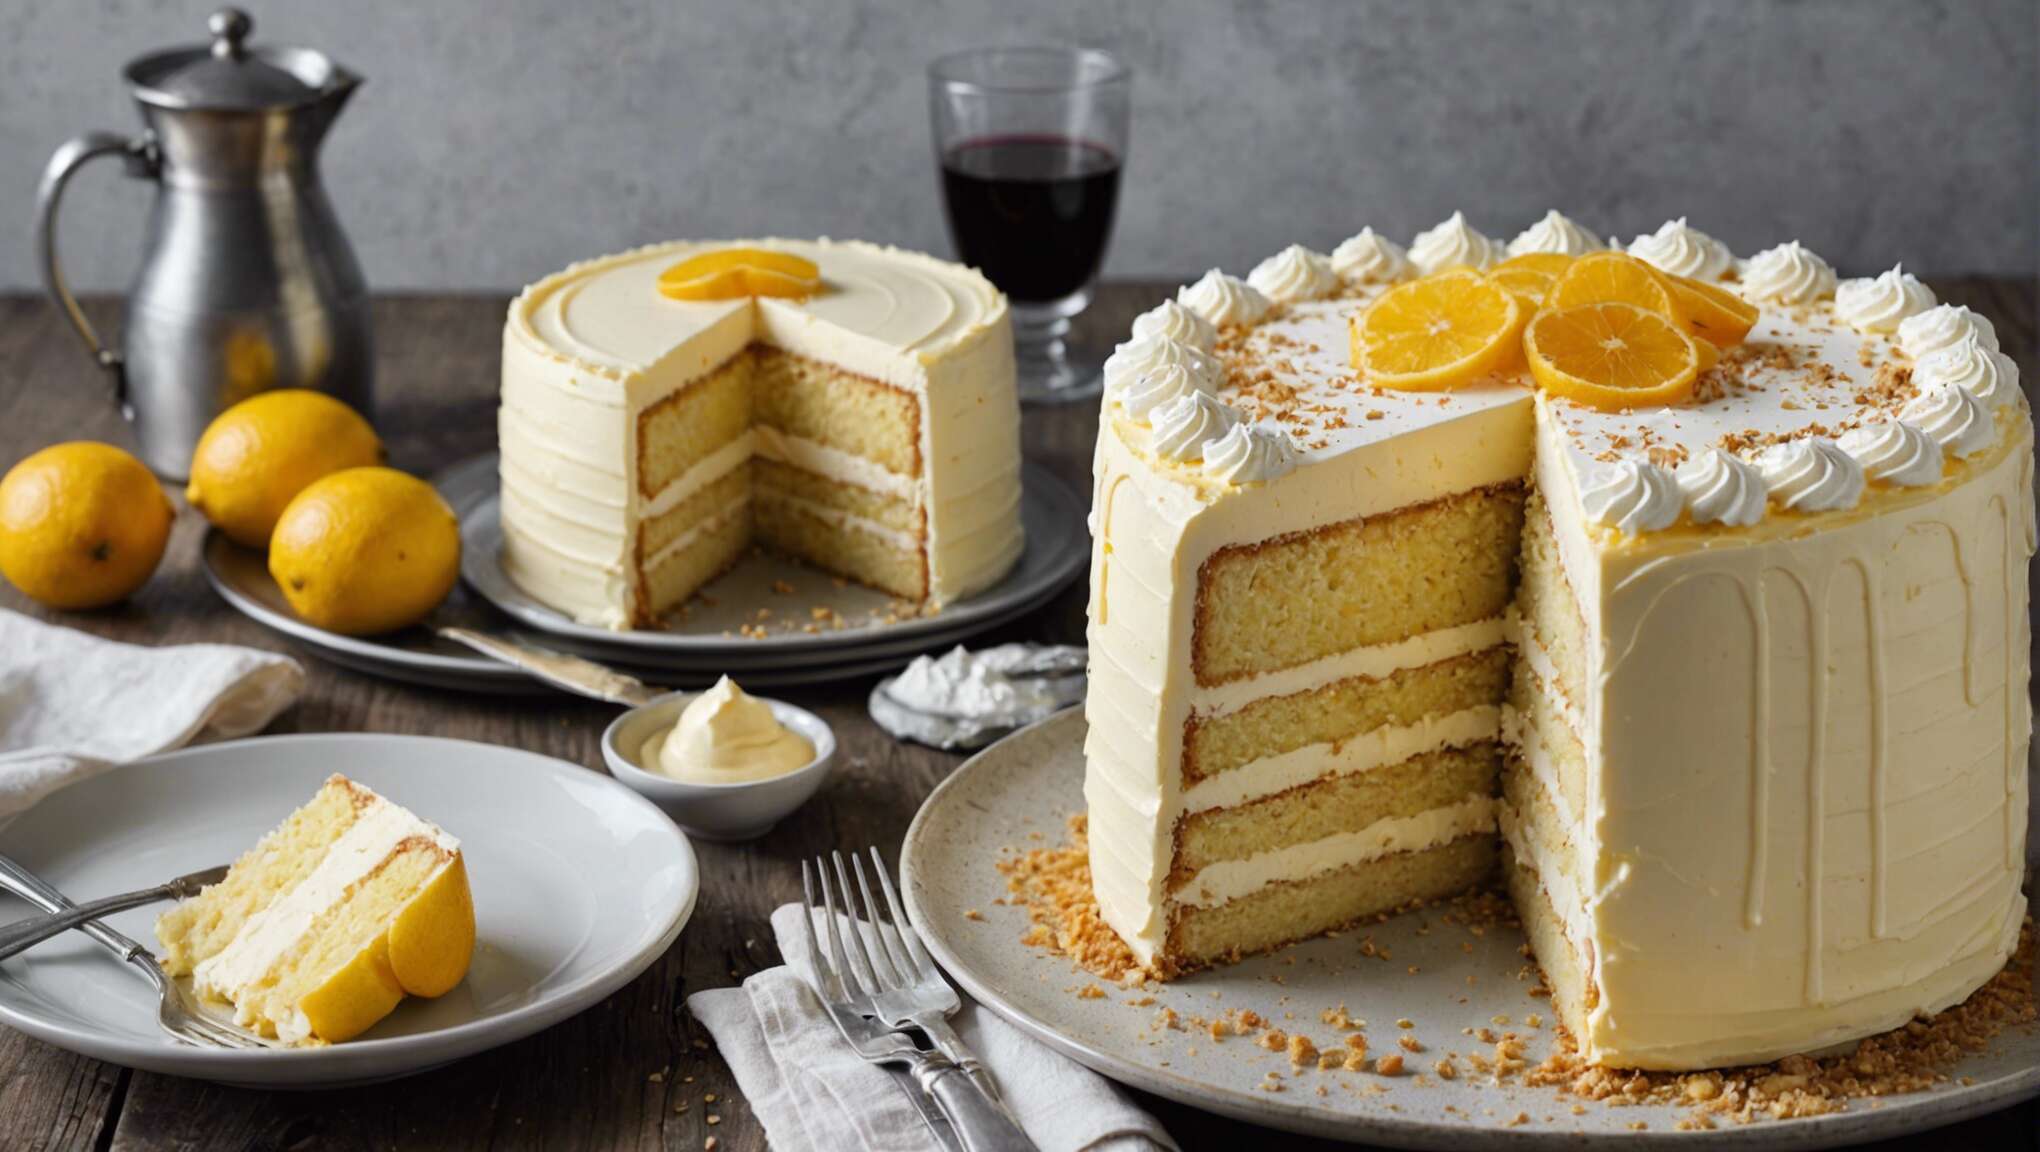 Recette de layer cake à la vanille et fruits rouges : plaisir gourmand en couches